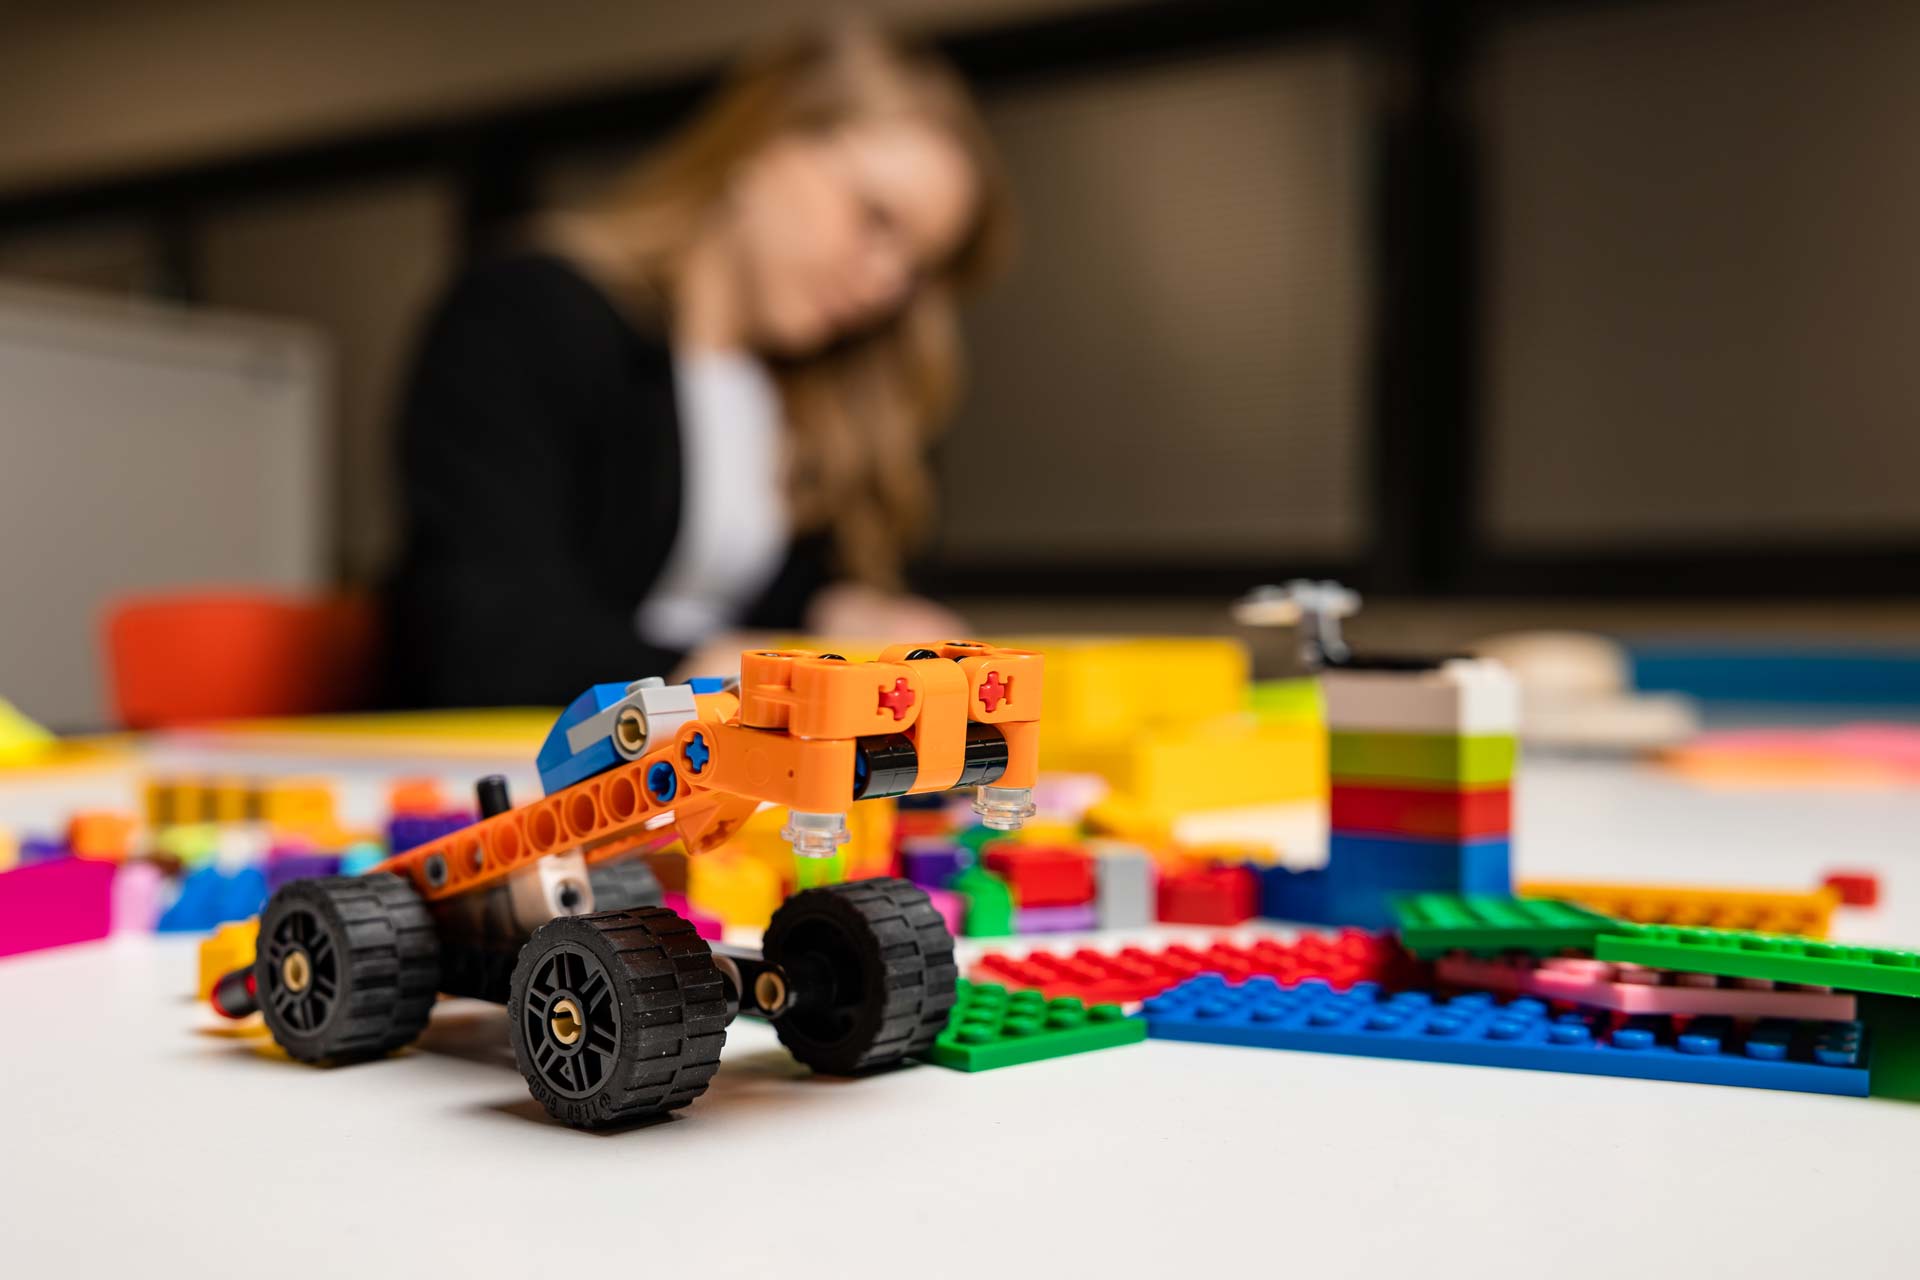 Legoauto ja taustalla opiskelija.